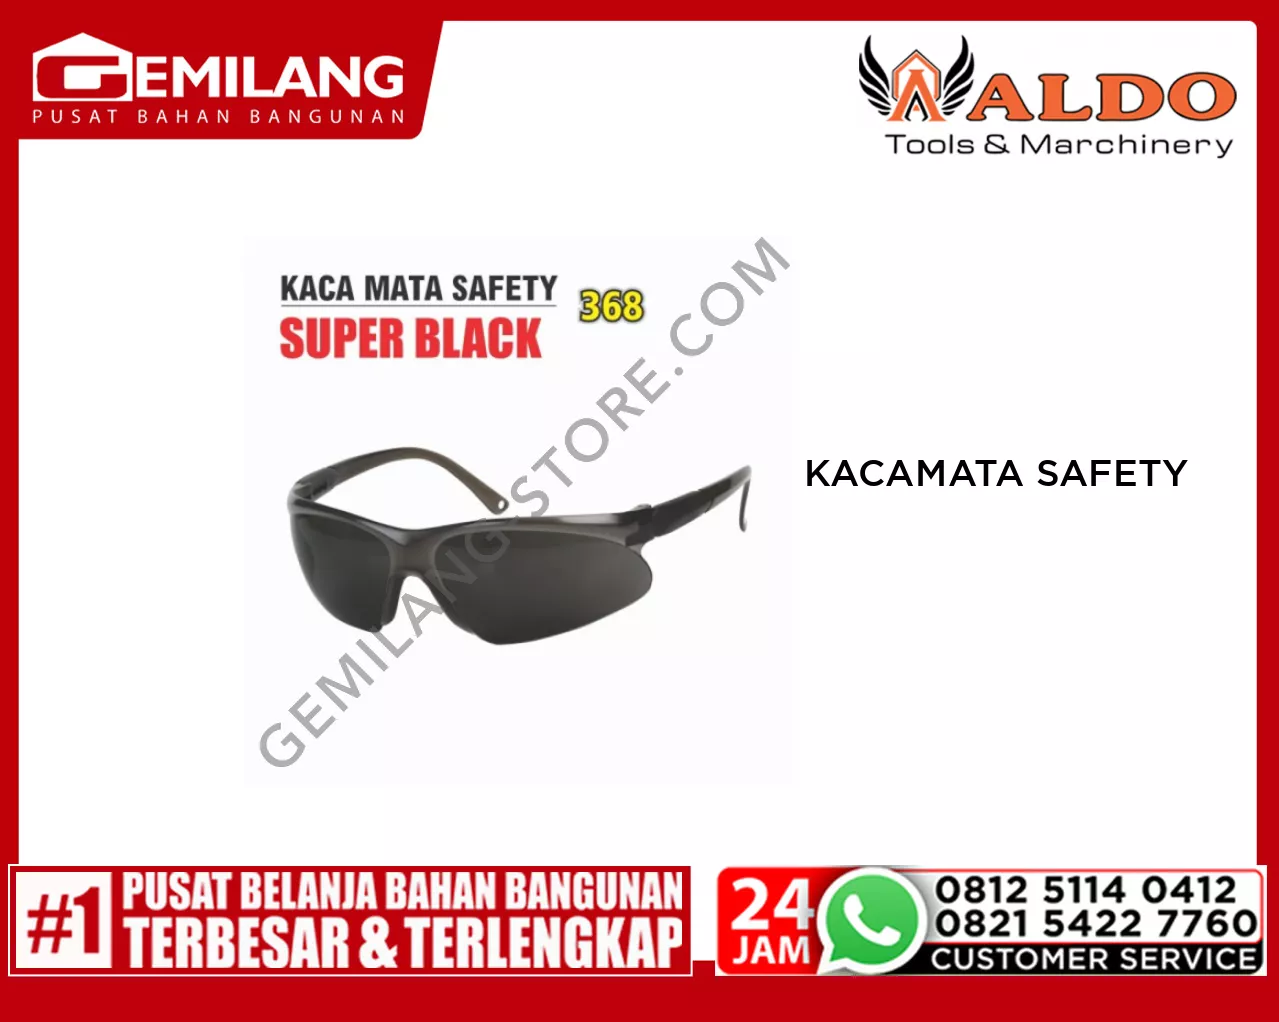 ALDO KACAMATA SAFETY SUPER BLACK 368